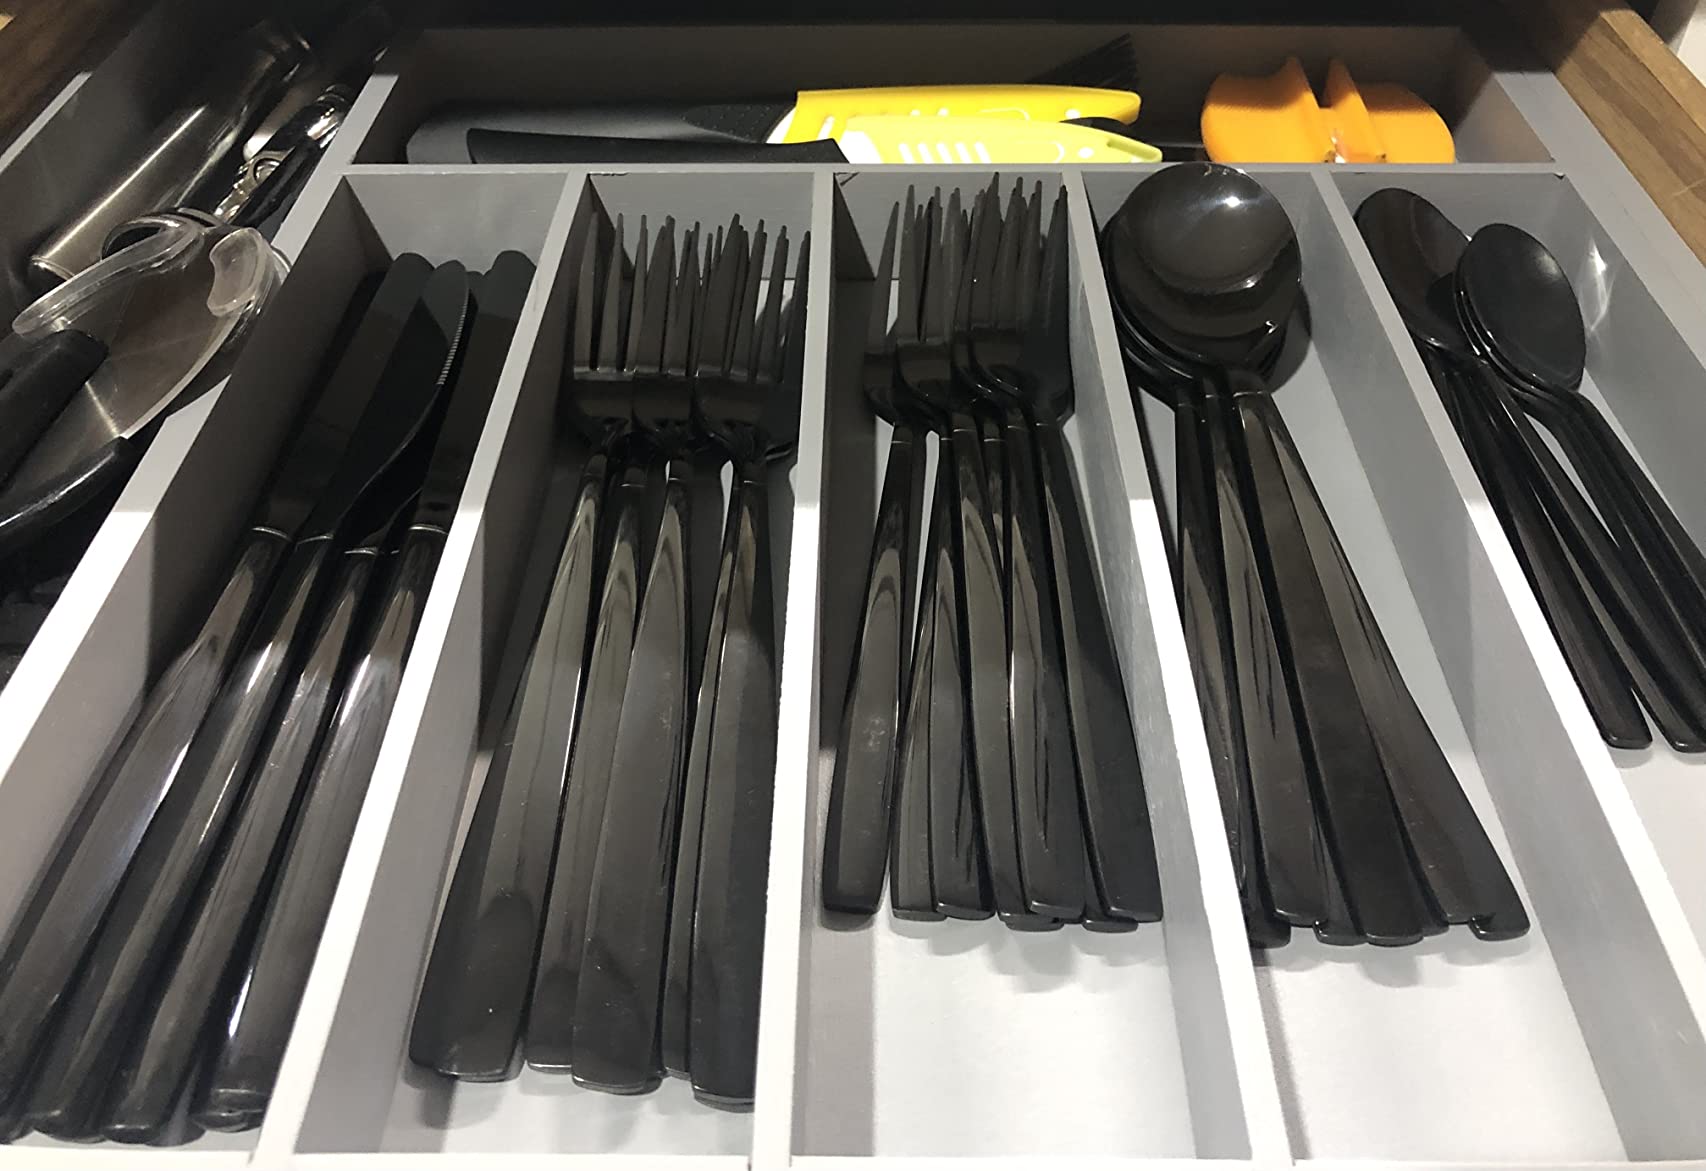 Berglander 286 black stainless steel cutlery set